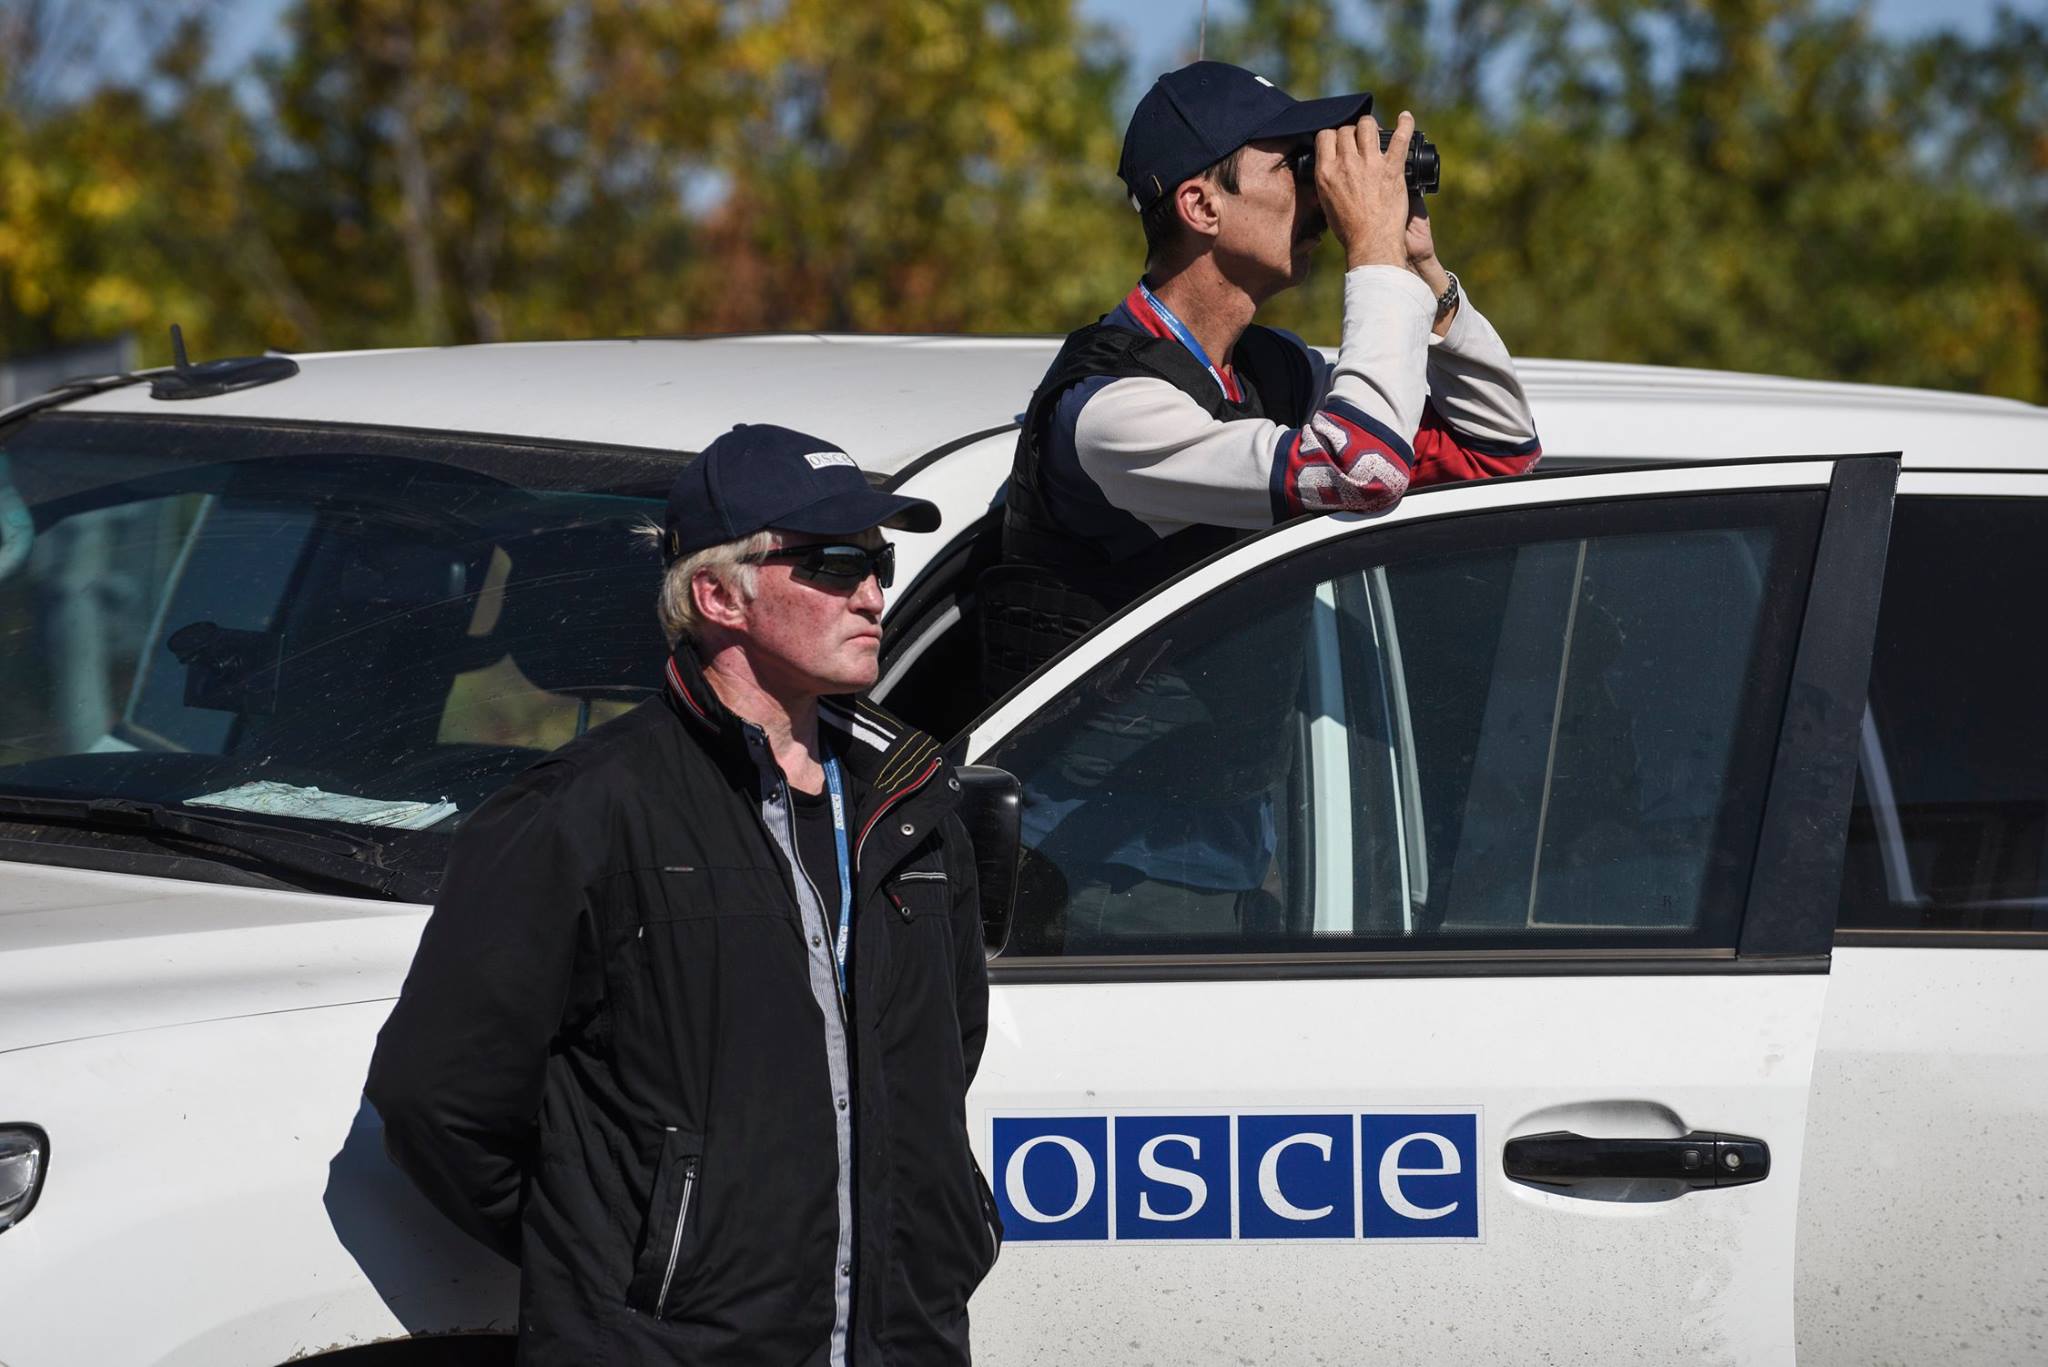 ОБСЕ официально подтвердила минометный обстрел автомобиля миссии